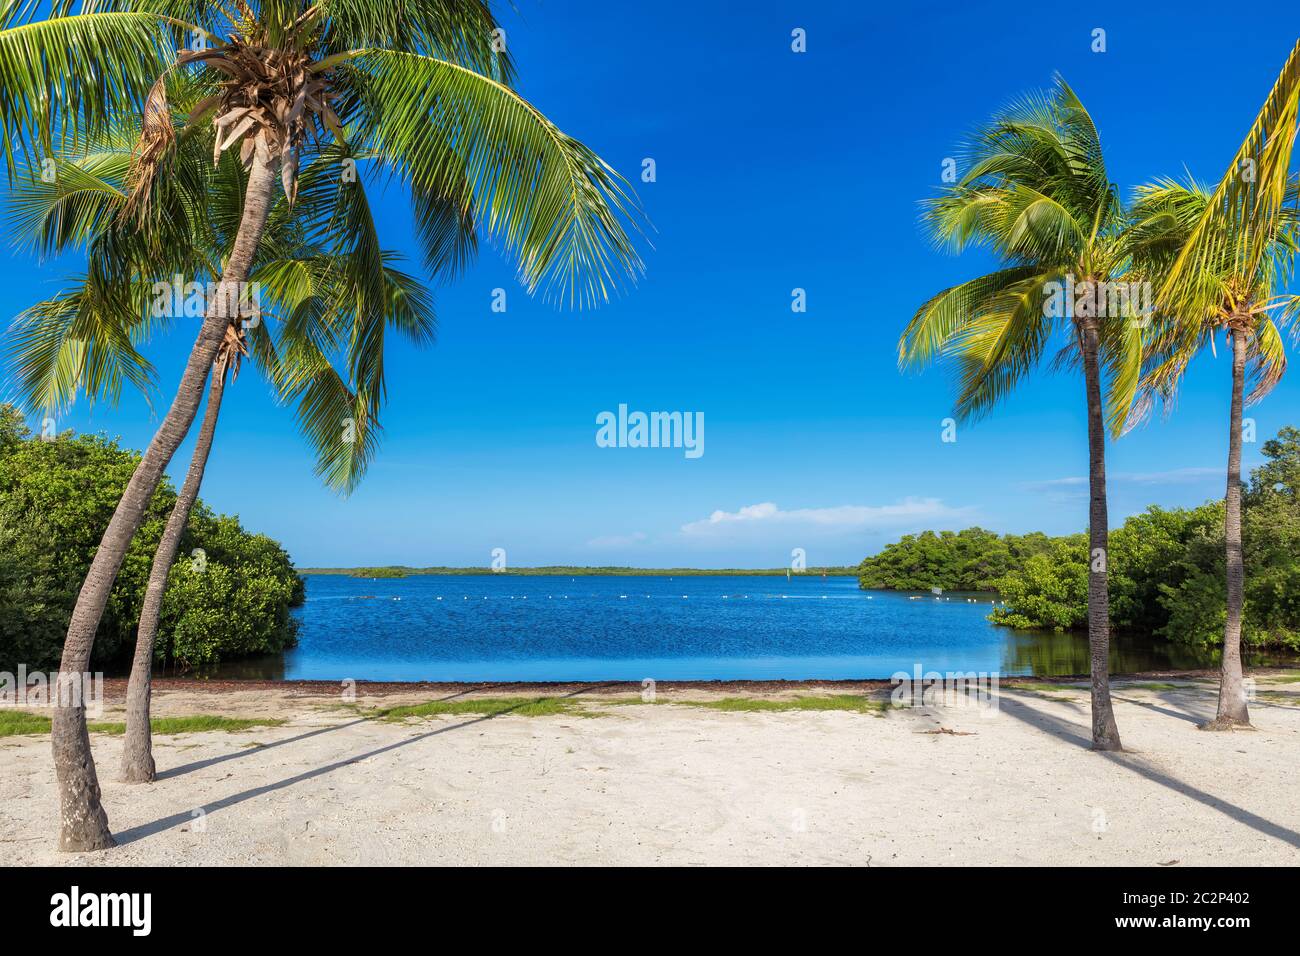 Palmiers sur une plage tropicale dans la région de Florida Keys. Banque D'Images